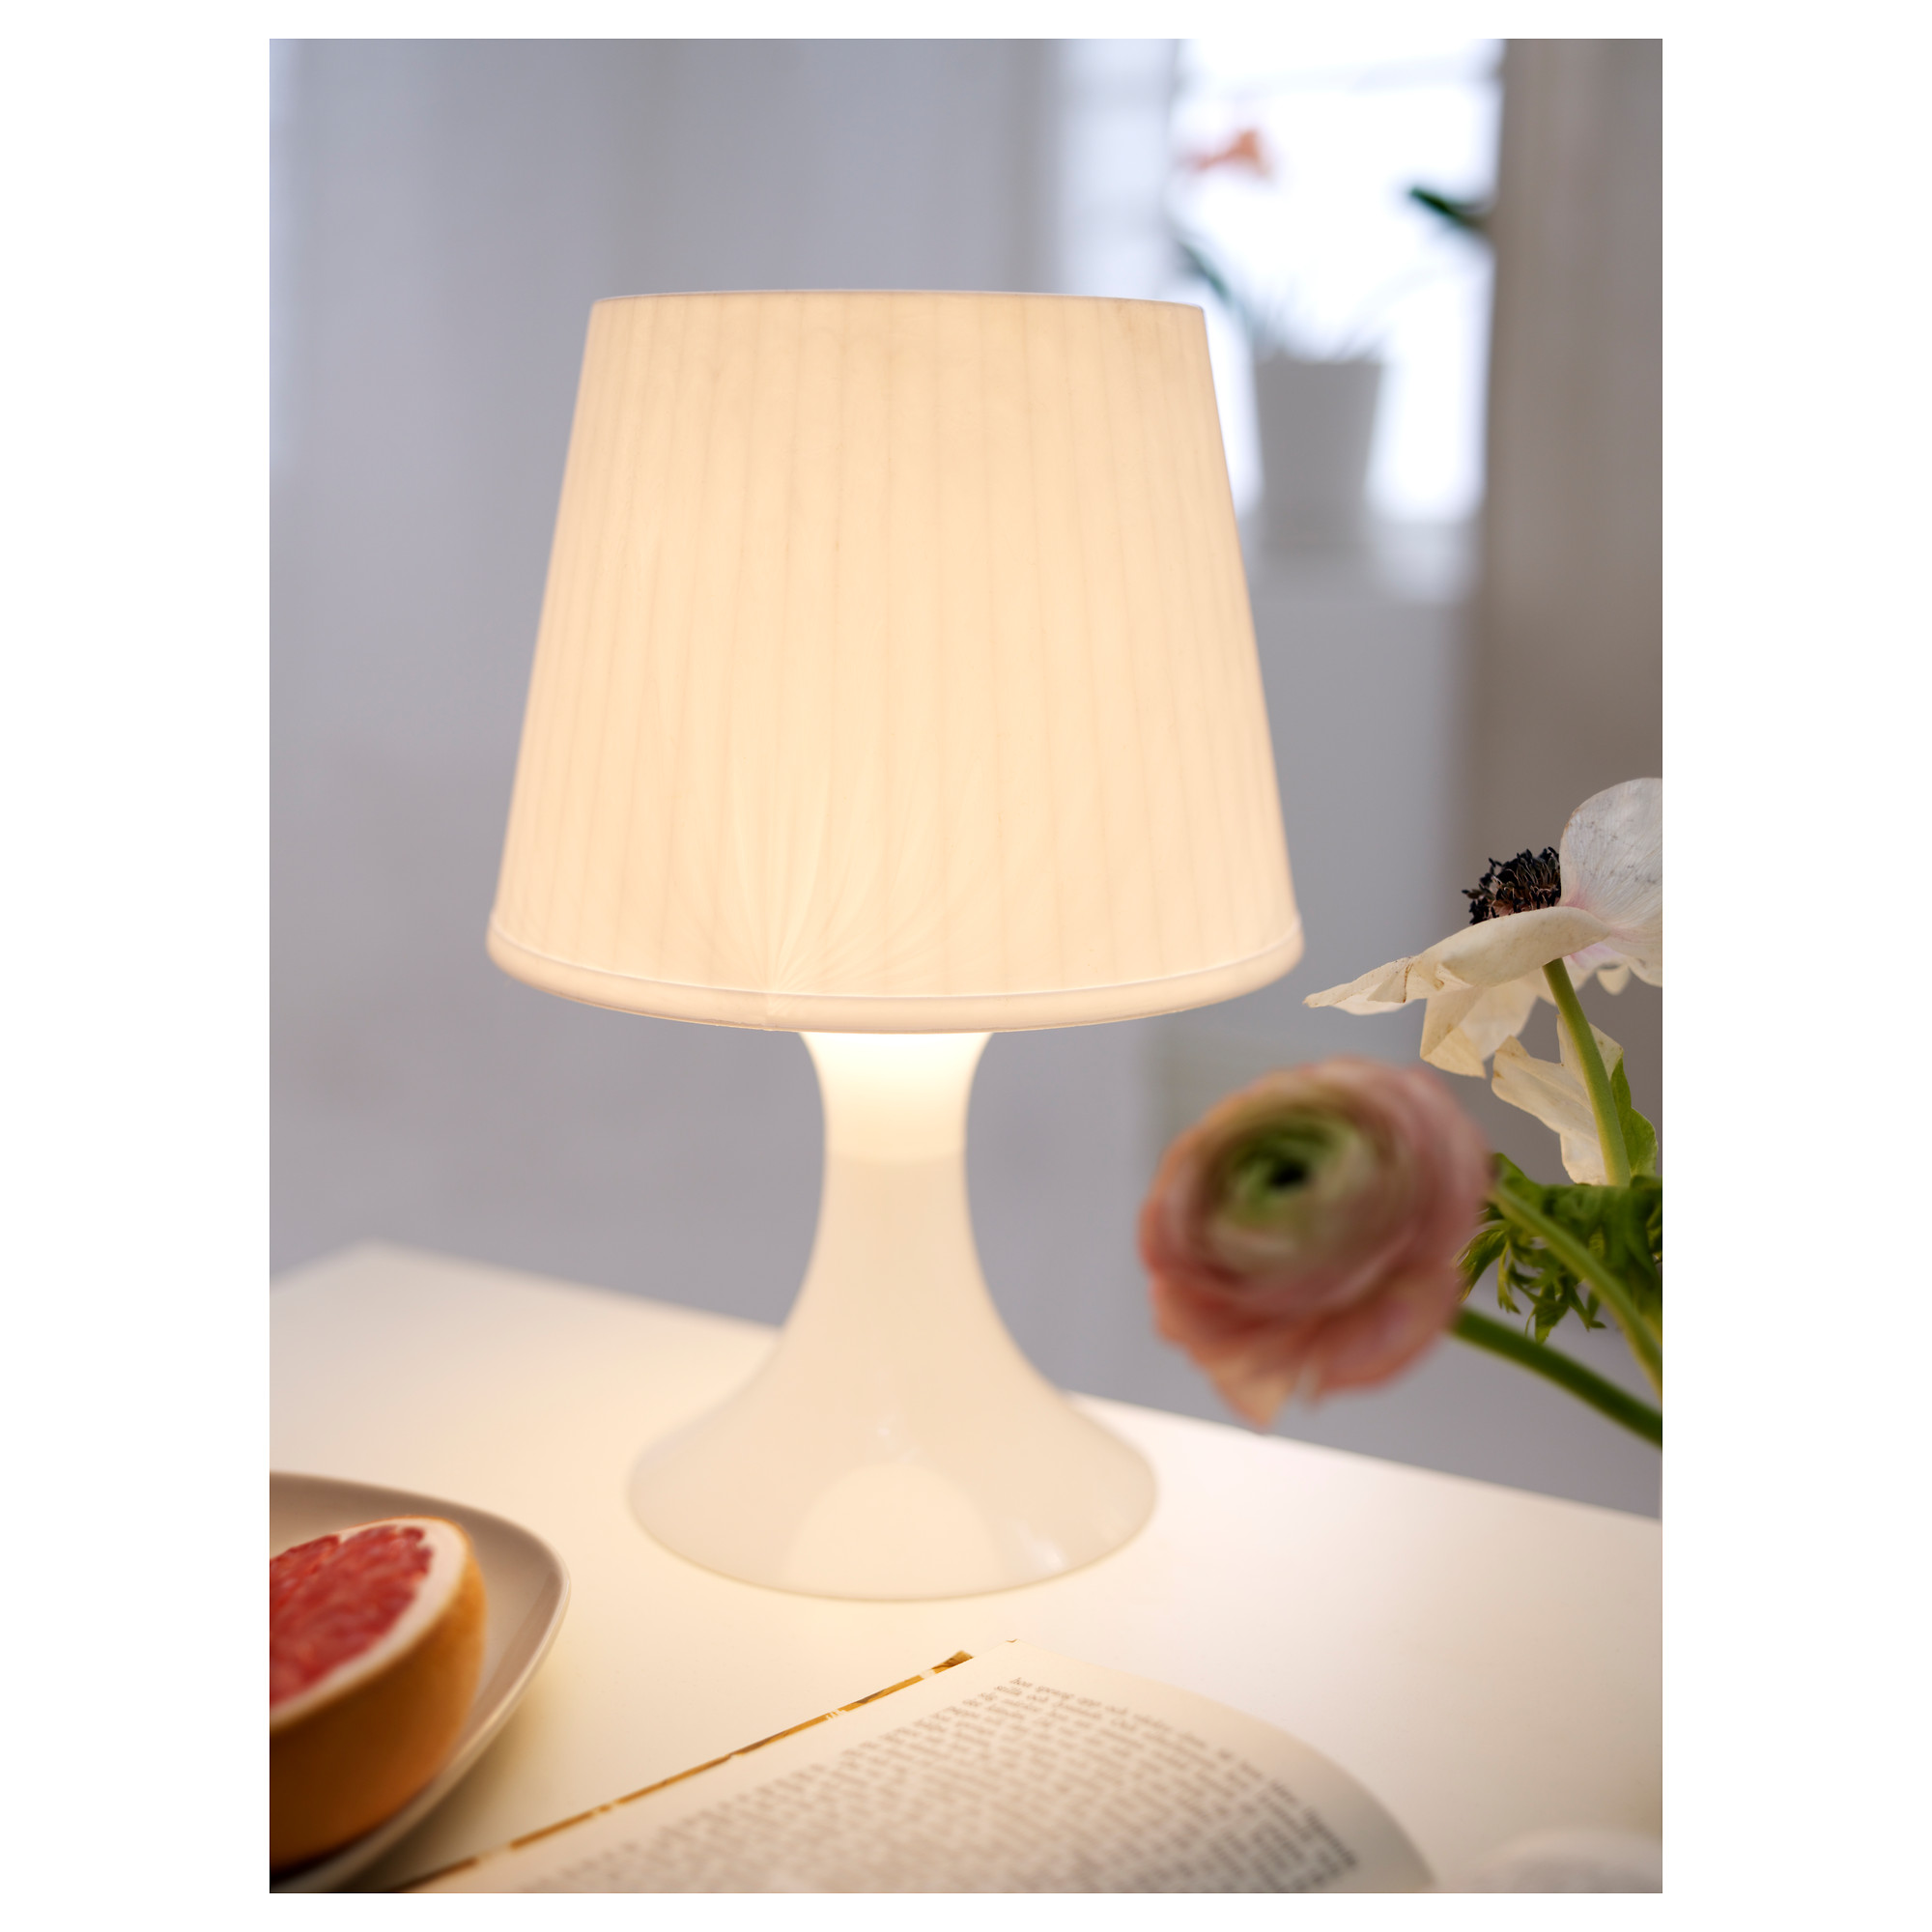 LAMPAN table lamp